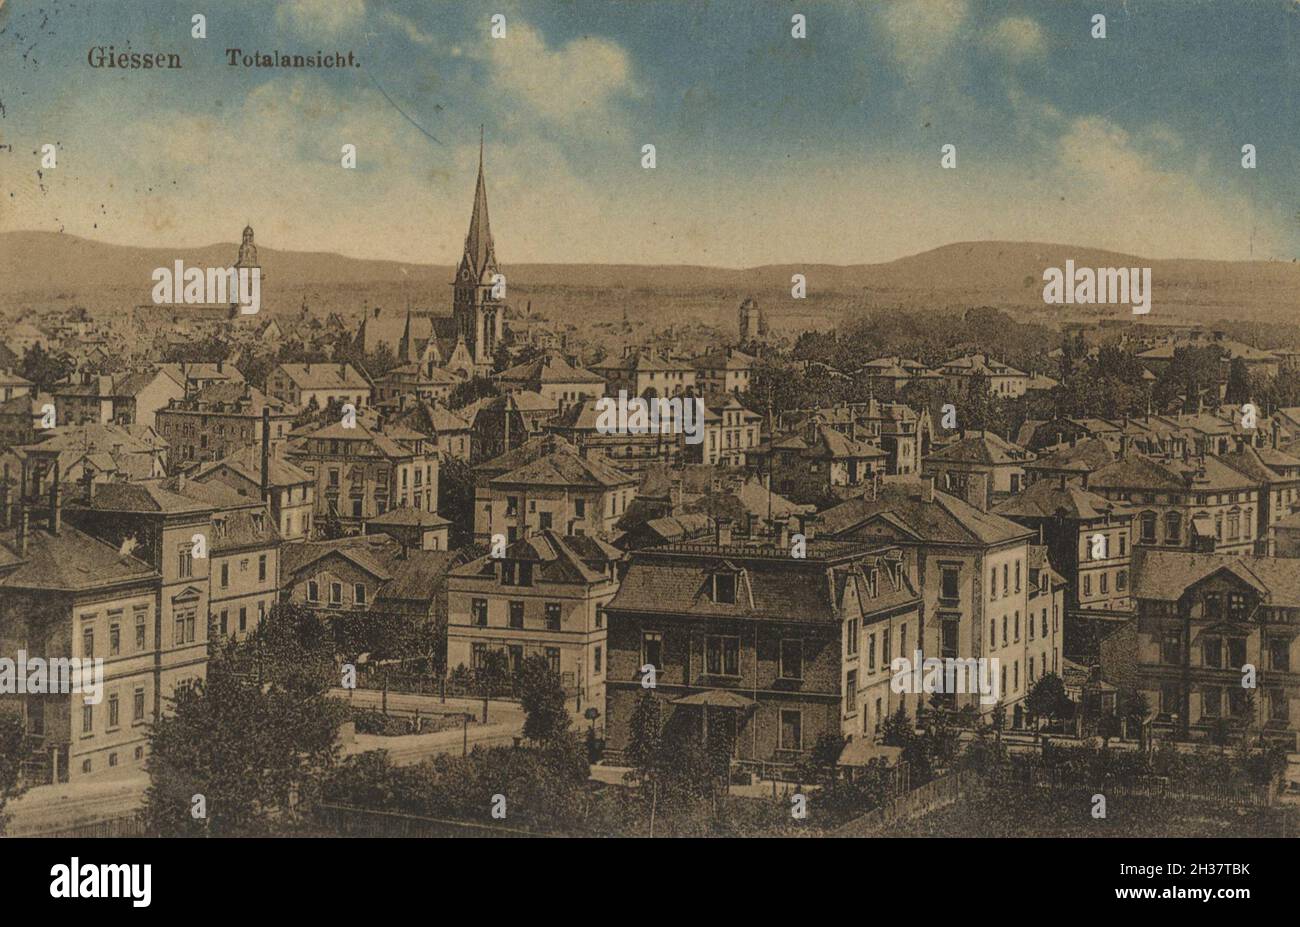 Gießen, Hessen, Deutschland, Ansicht von ca 1910, digitale Reproduktion einer gemeinfreien Postkarte Banque D'Images